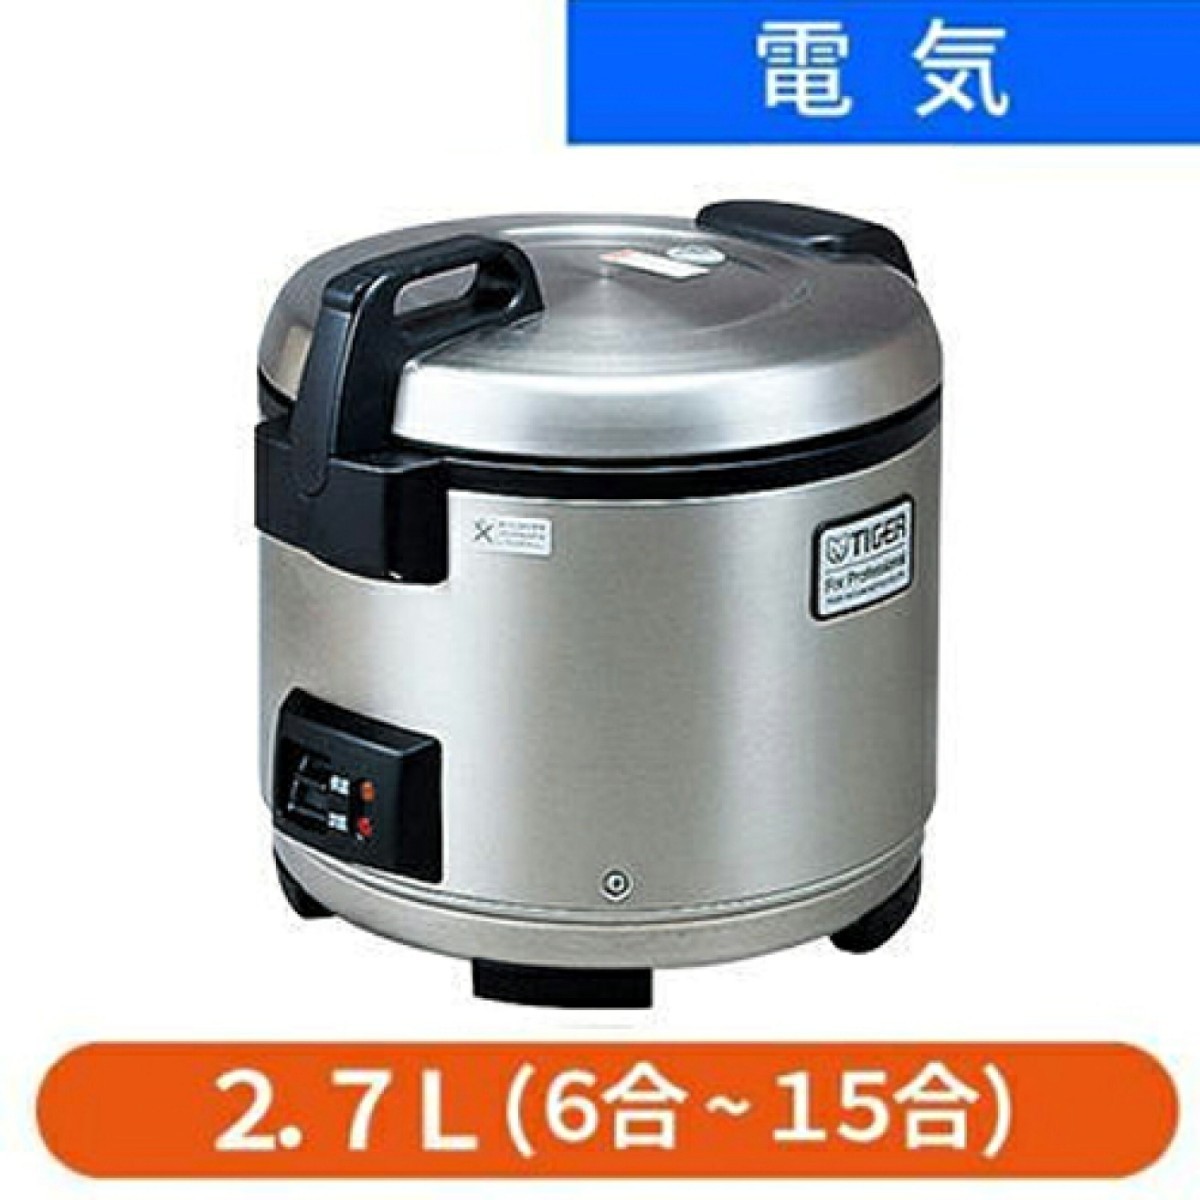 新品未開封品 TIGER タイガー 炊飯ジャー 2.7L JNO-A270 業務用